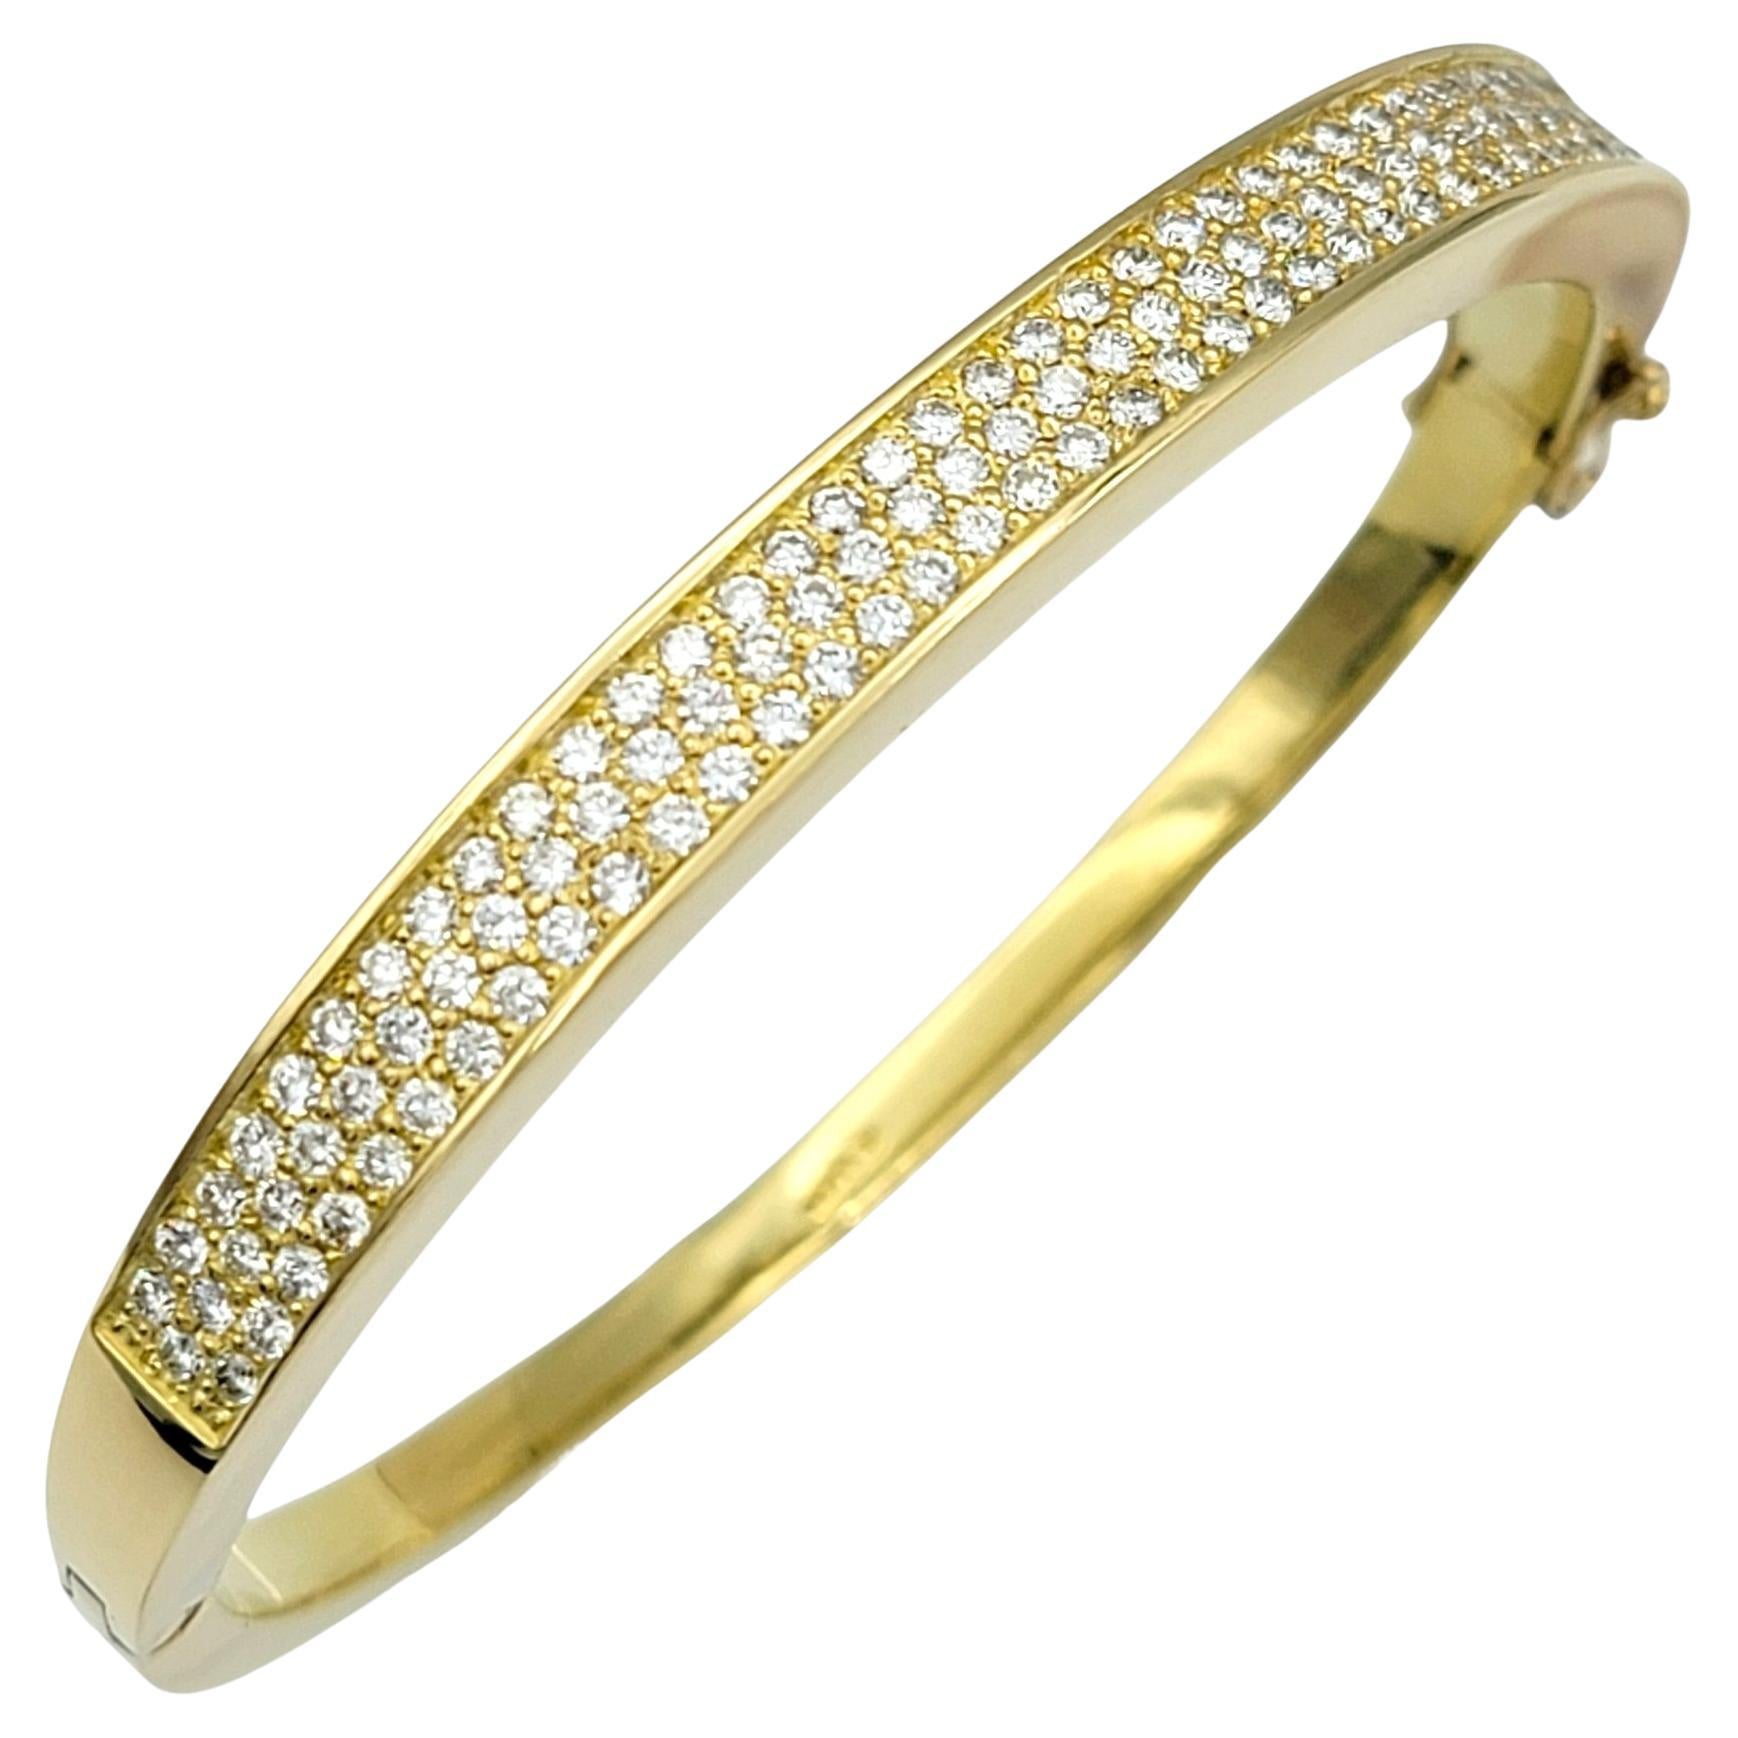 Armband mit Scharnier aus 18 Karat Gelbgold mit rundem Brillantpavé und Diamanten